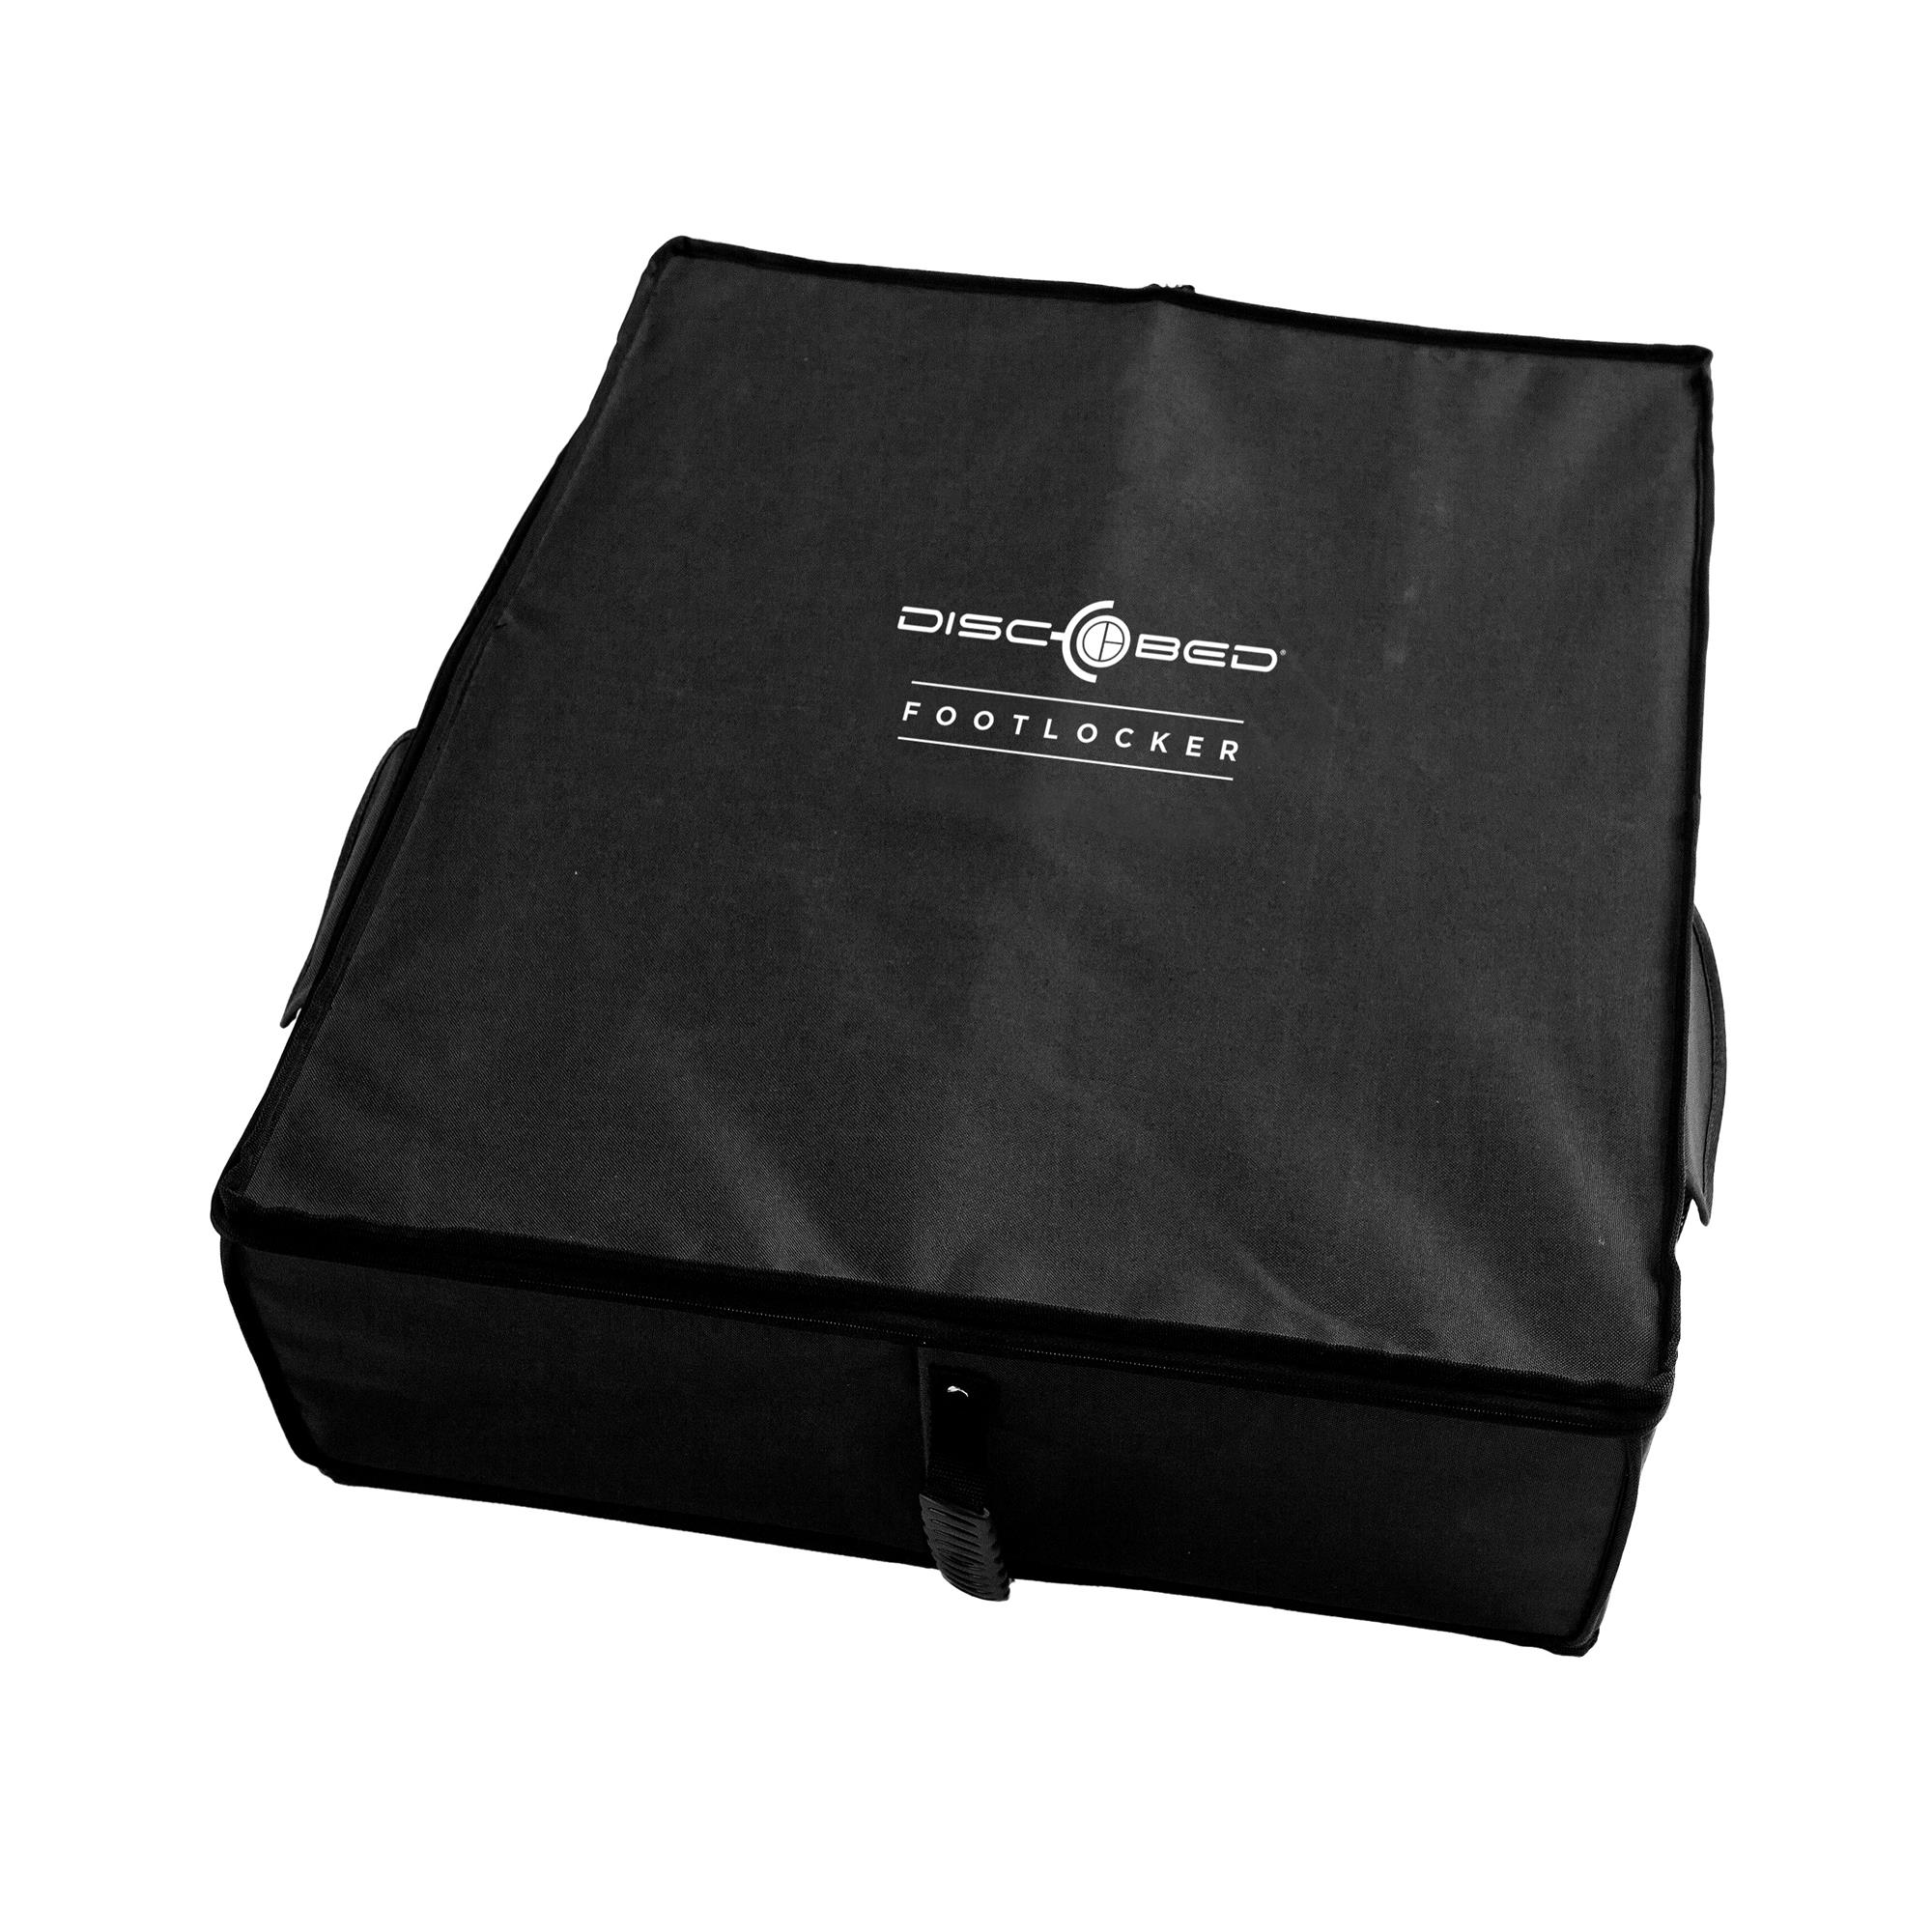 Disc-O-Bed Footlocker Aufbewahrungsbox schwarz